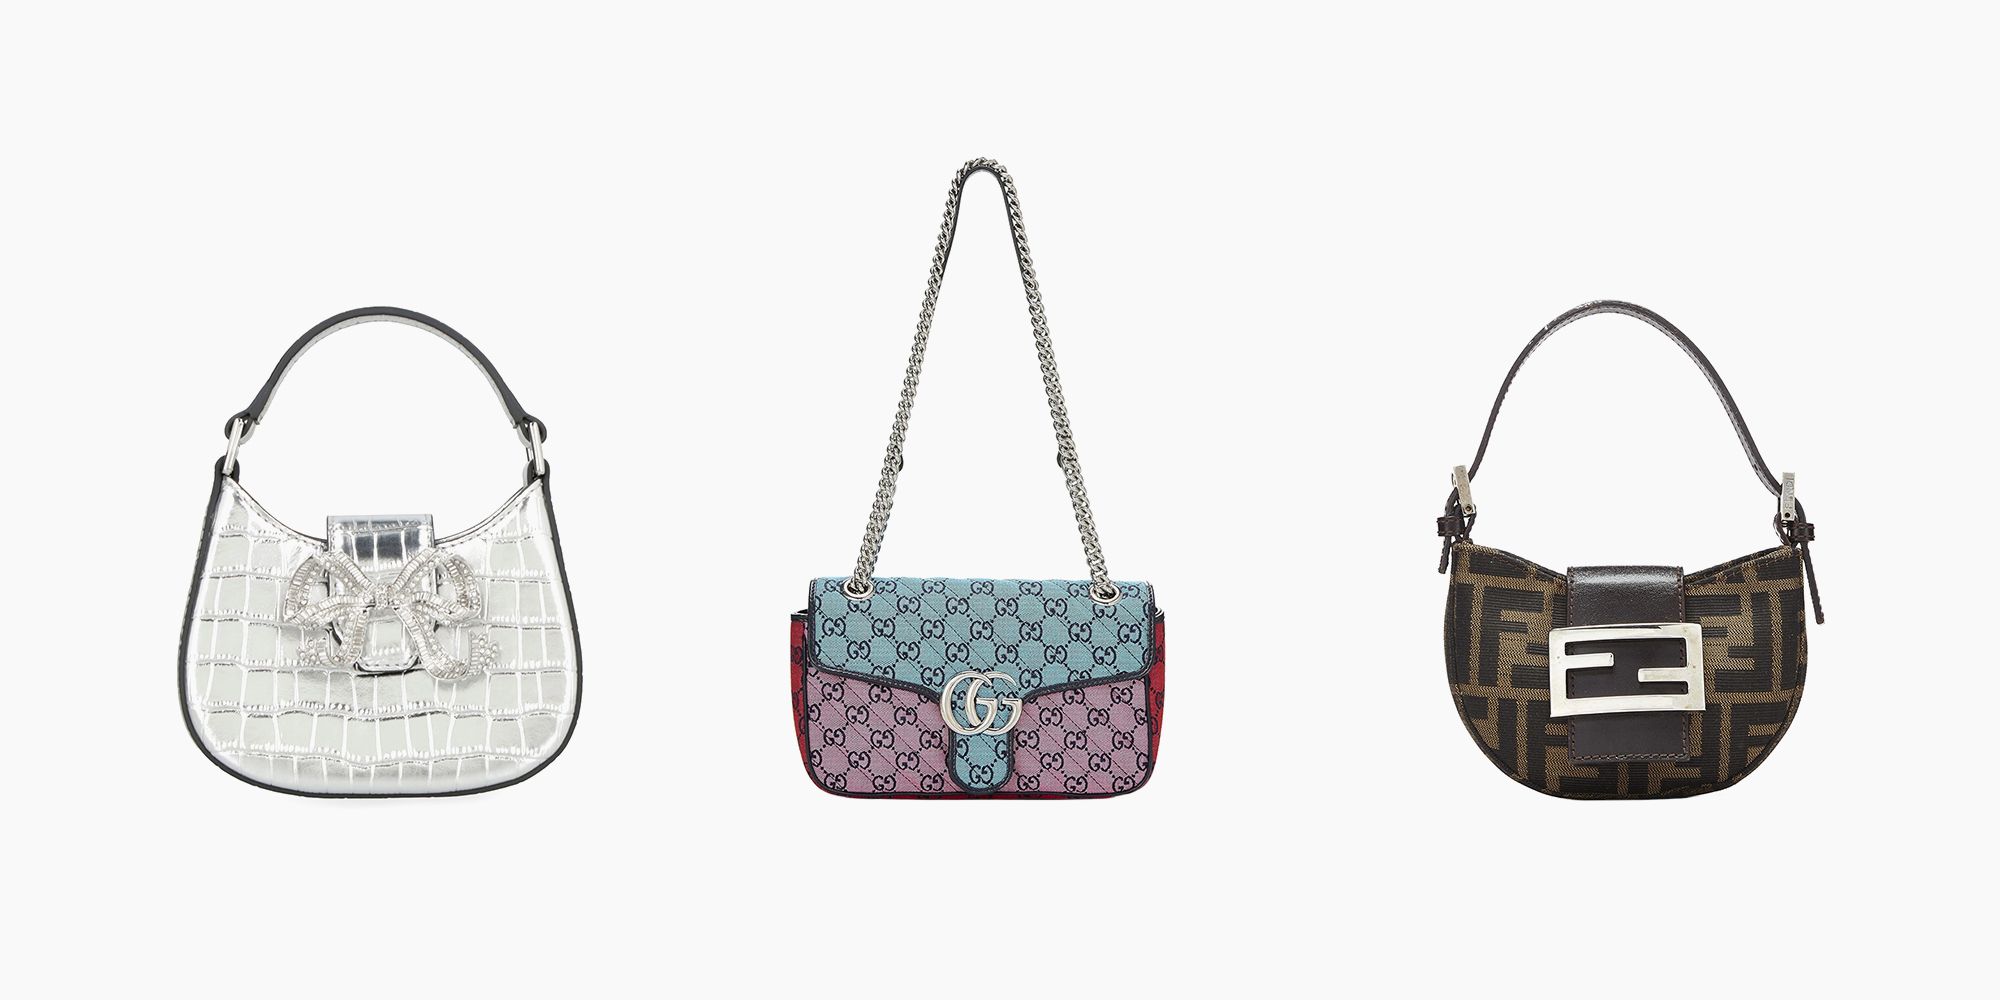 Poppy Leather Women Satchel Top Handle Handbags Crossbody Shoulder Bag With  Wallet 2 Pieces - Walmart.com